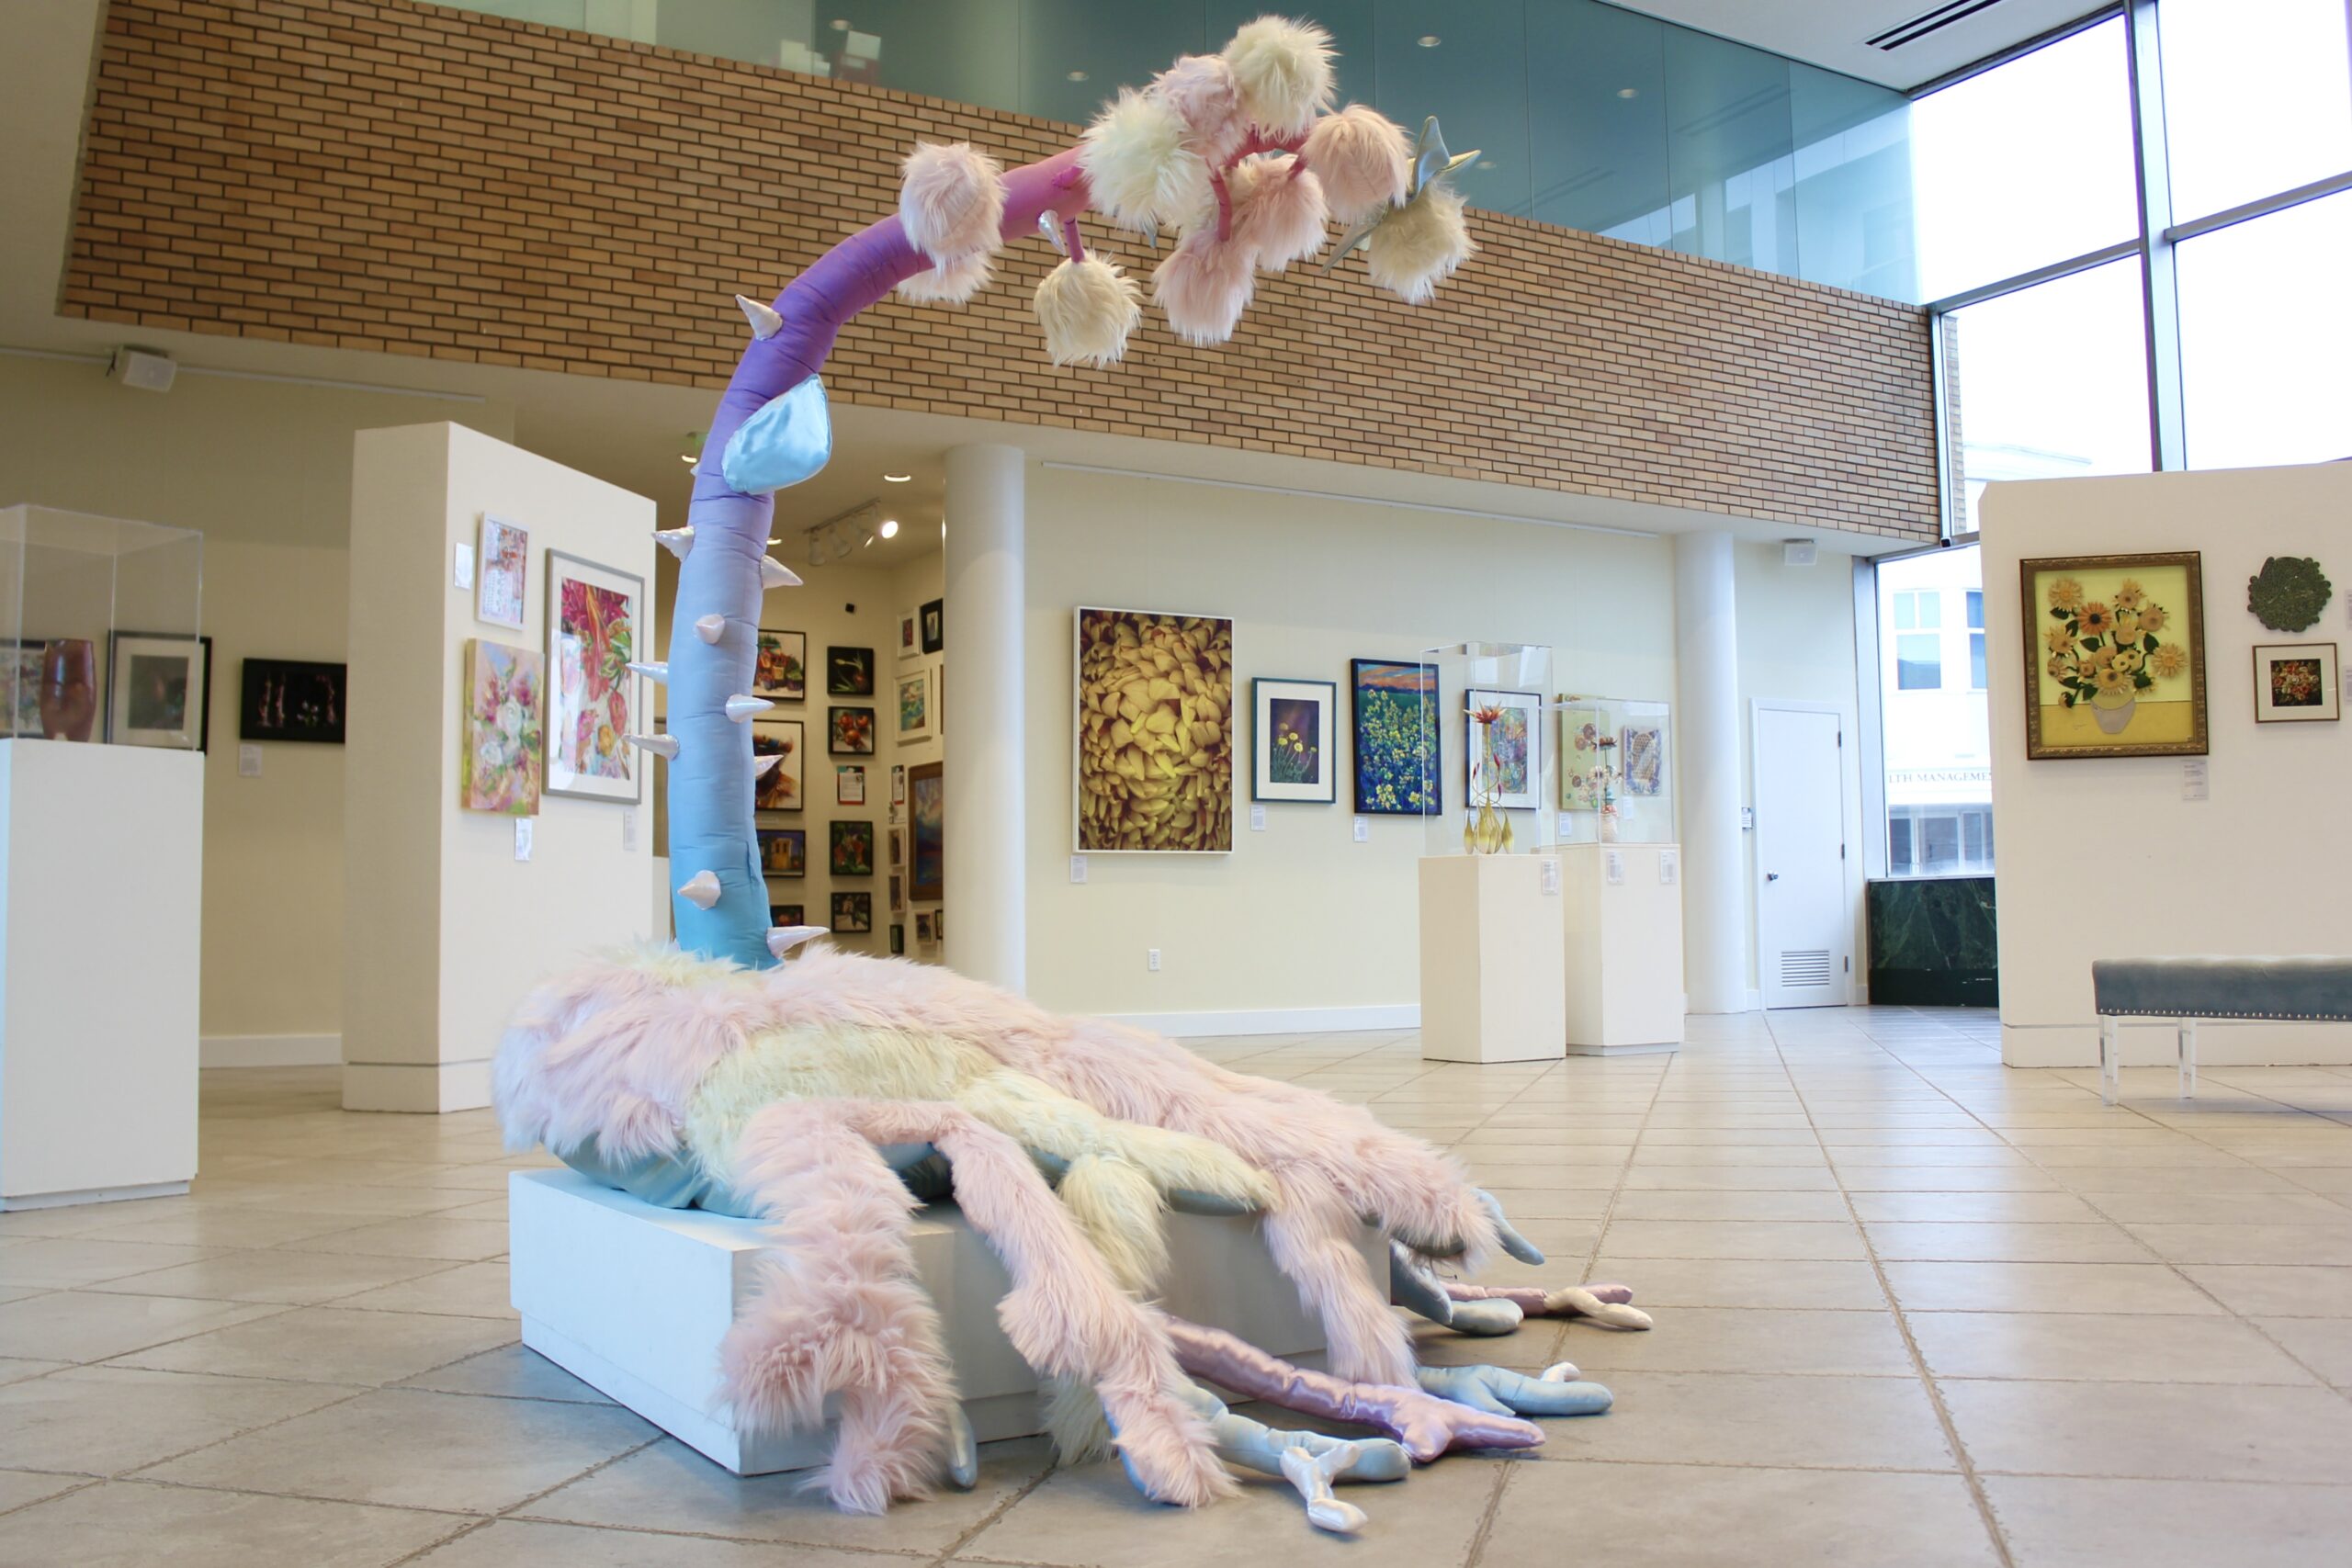 Large, multi-media sculpture in the center of the room exhibiting d'Art Center's Flourish exhibit.